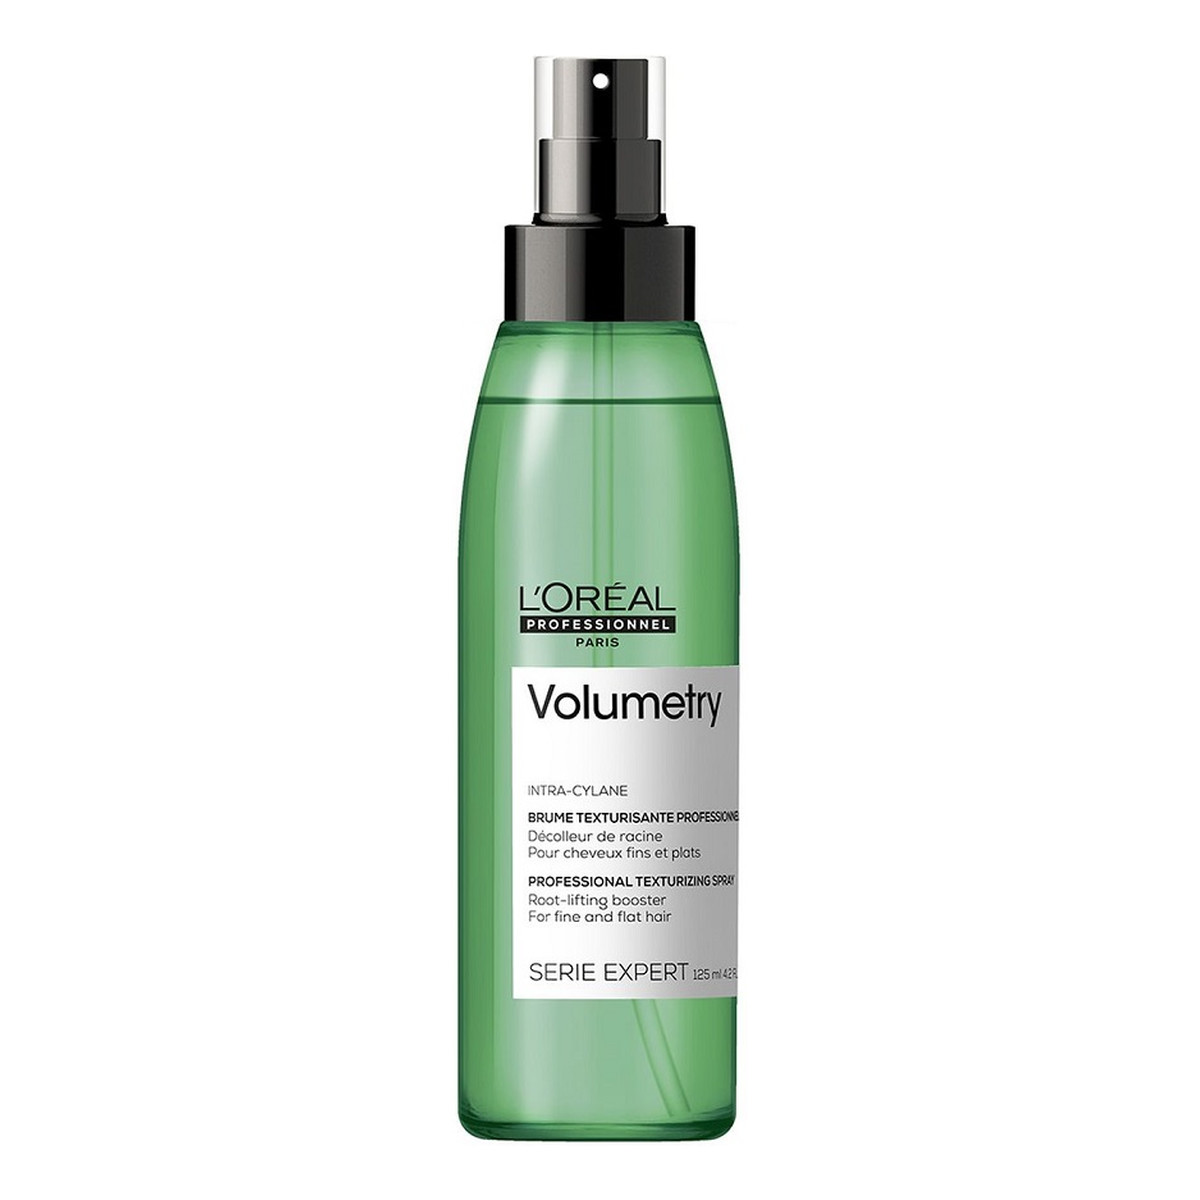 L'Oreal Paris Serie expert volumetry spray nadający objętość włosom cienkim i delikatnym 125ml